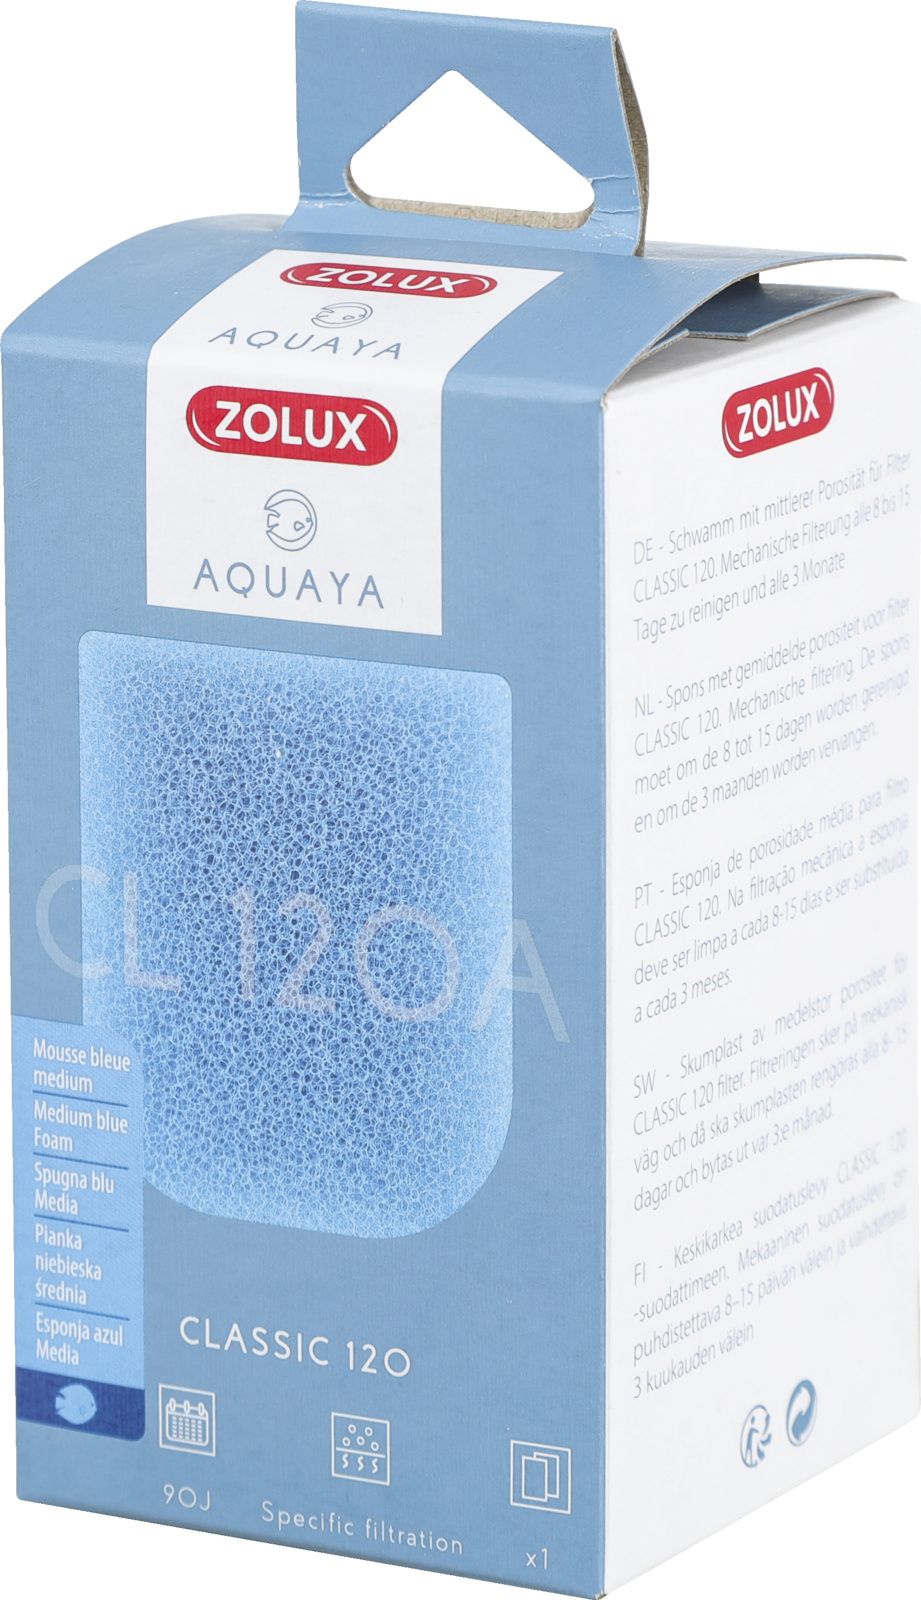 Zolux AQUAYA Wklad gabka Blue Foam Classic 120 7544708 (3336023302126) akvārija filtrs